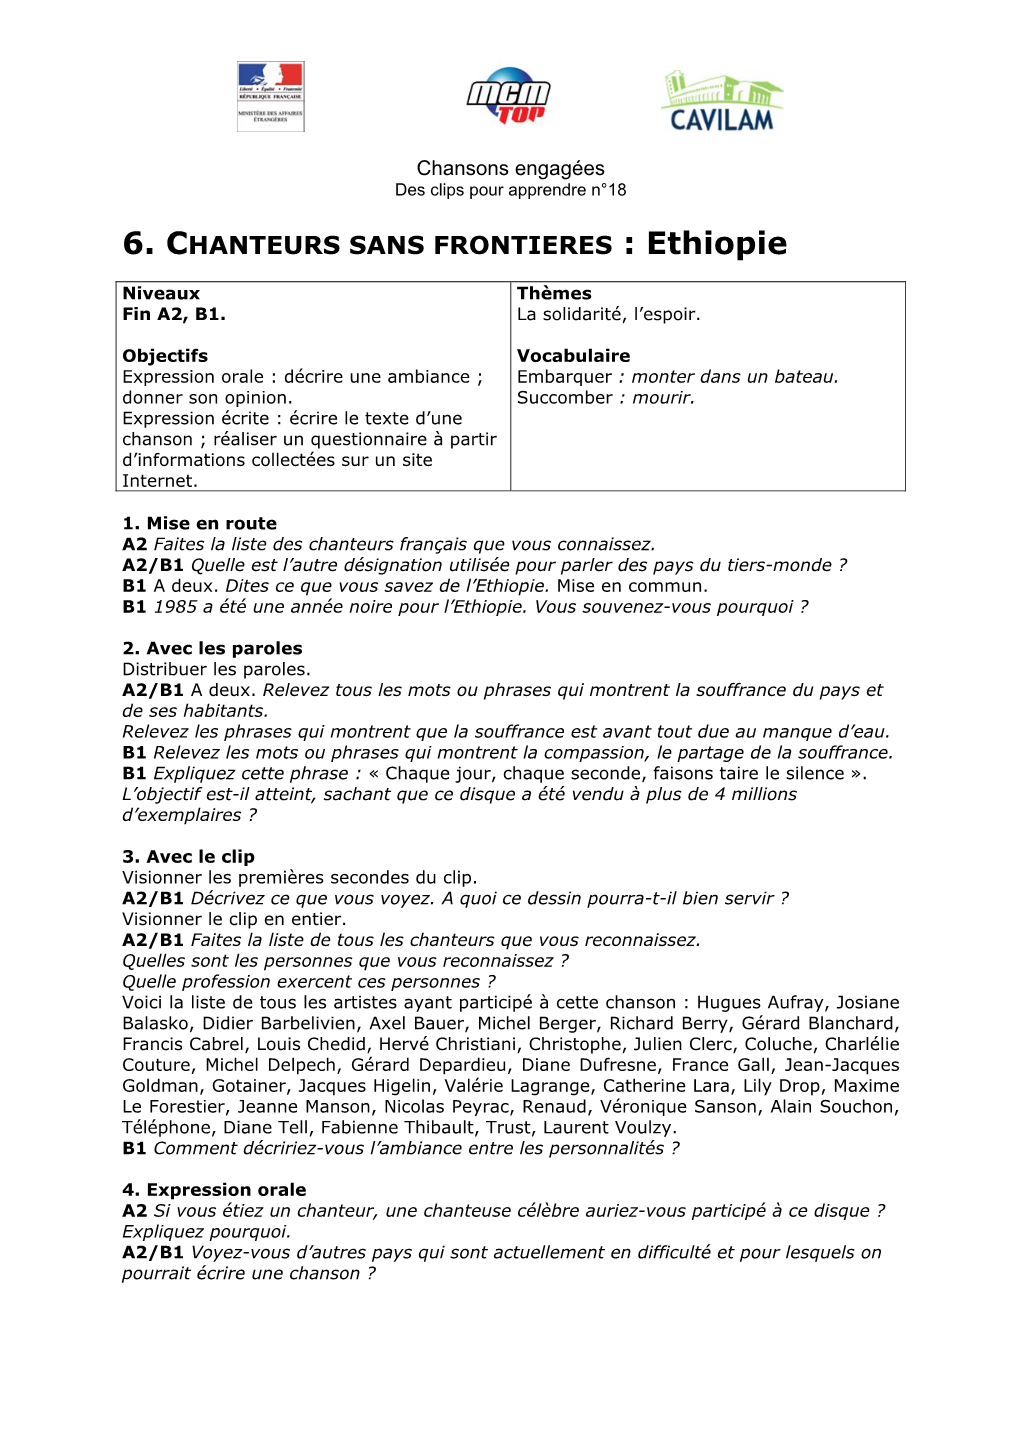 6. CHANTEURS SANS FRONTIERES : Ethiopie